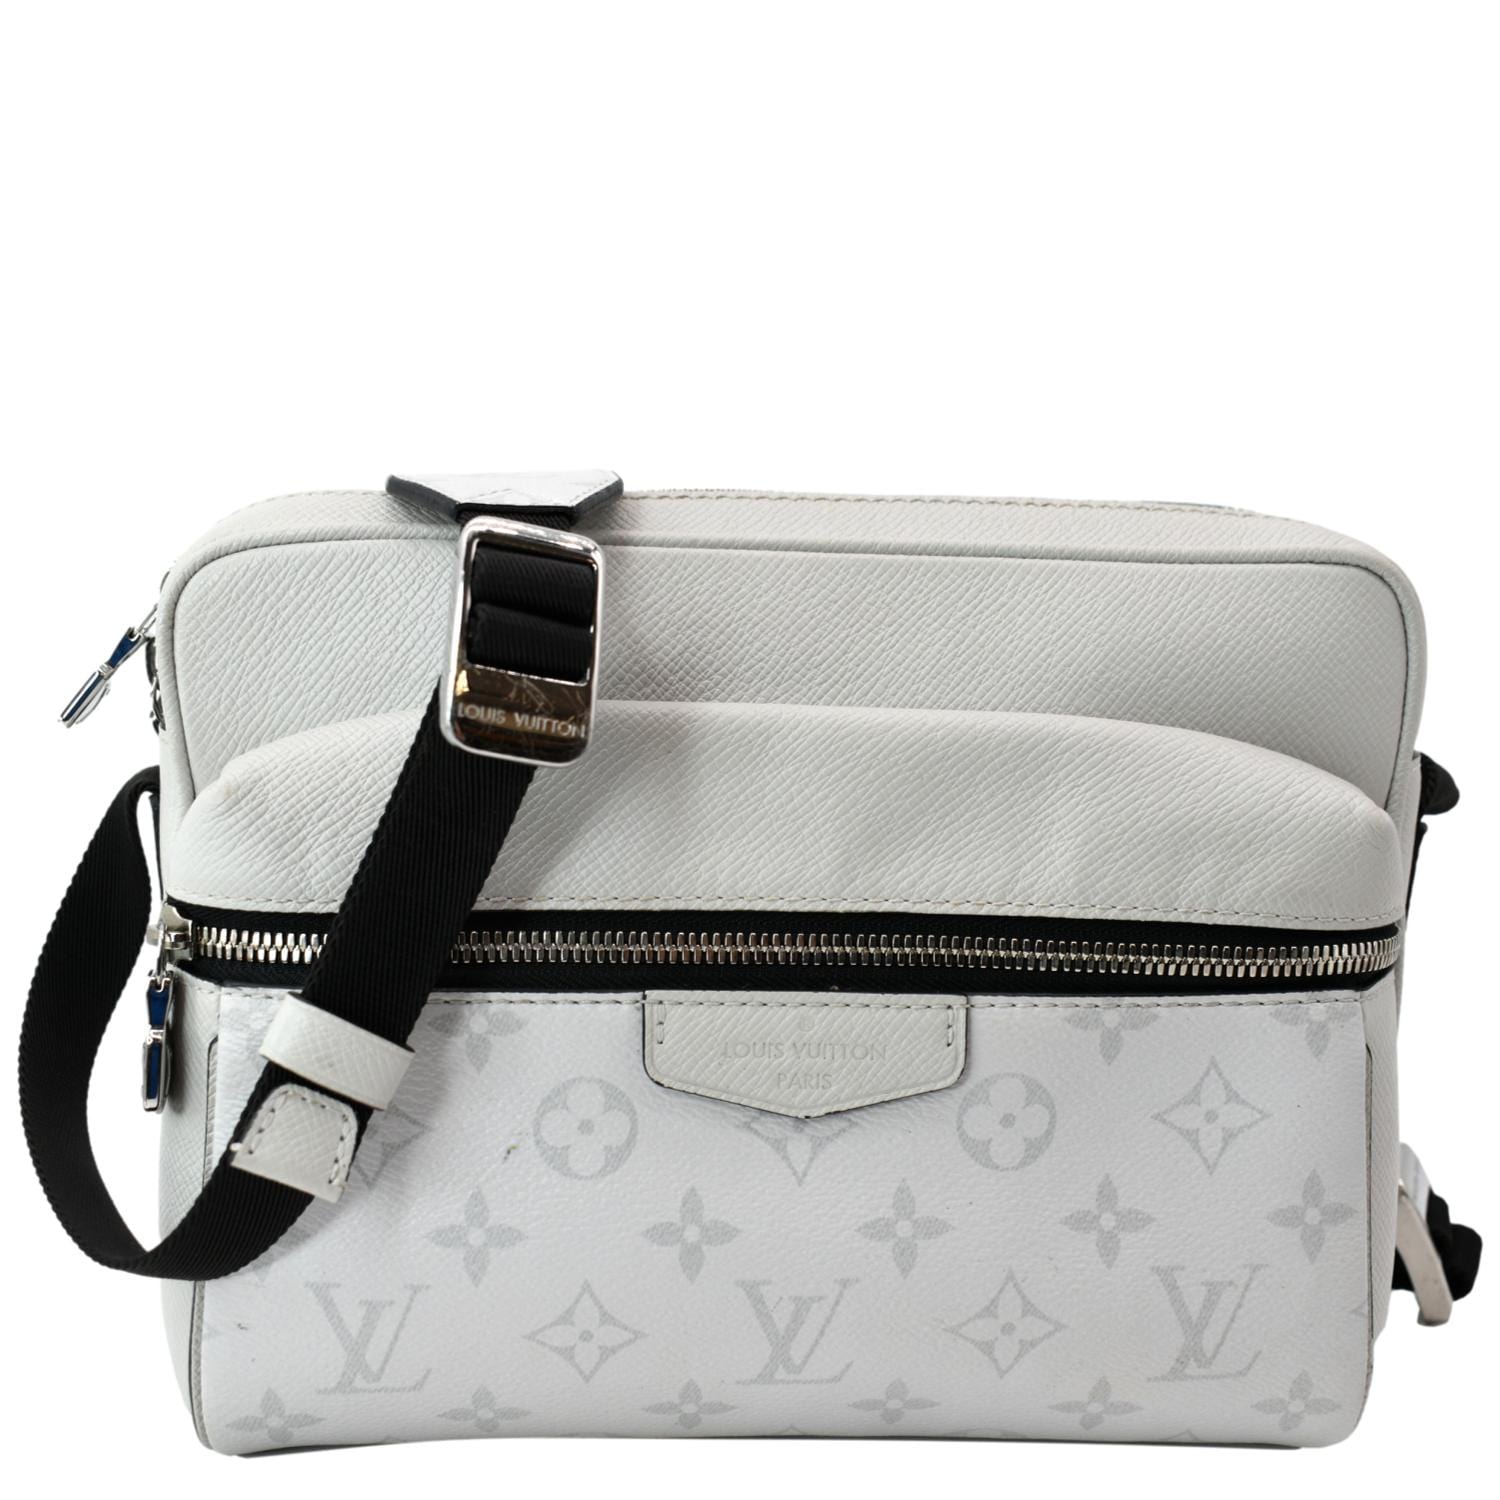 Louis Vuitton Outdoor Messenger Bag Silver Tiger Llama men's bag